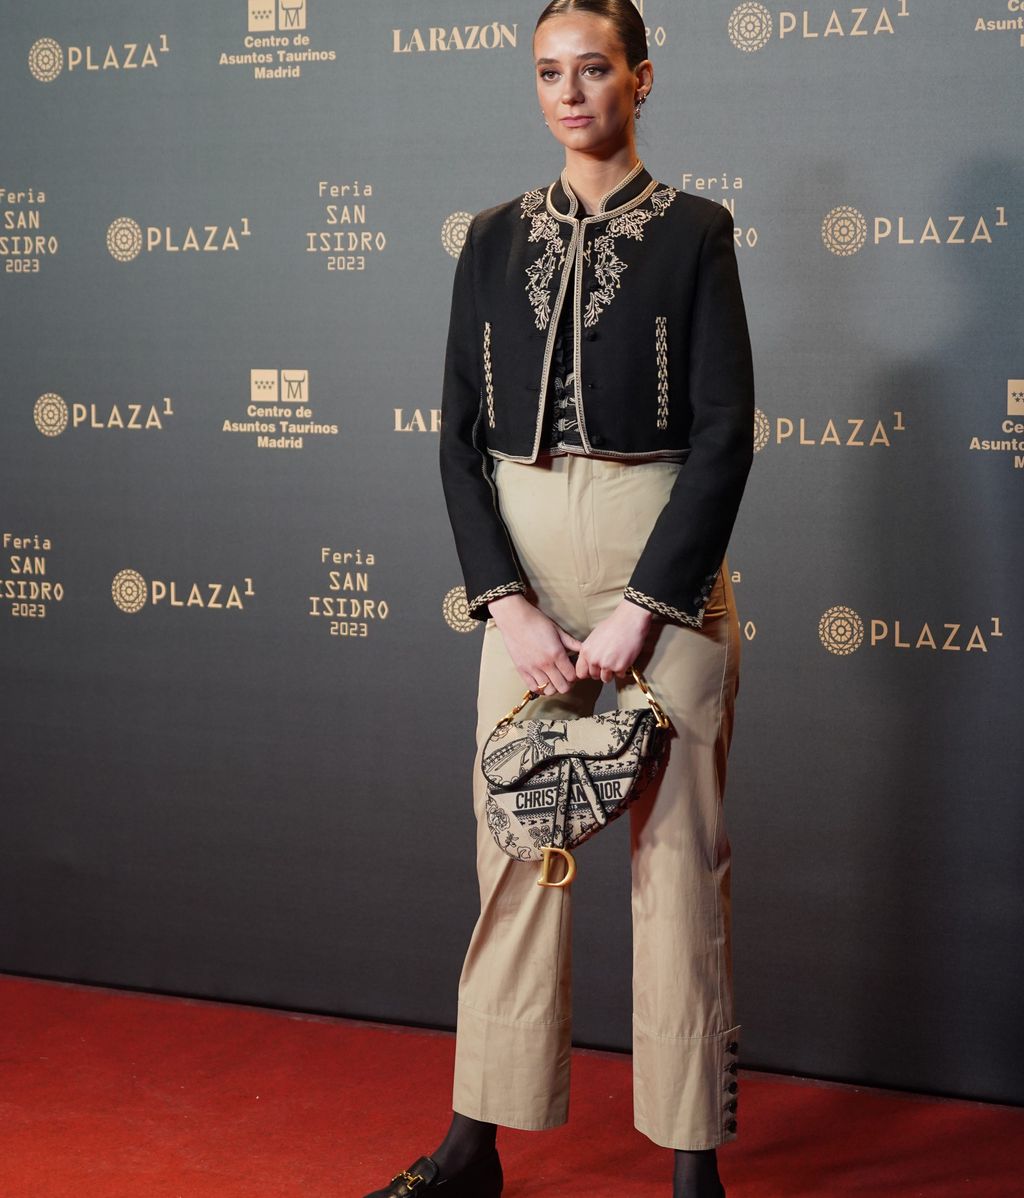 Dior firmaba el look 'torero' de la sobrina de Felipe VI